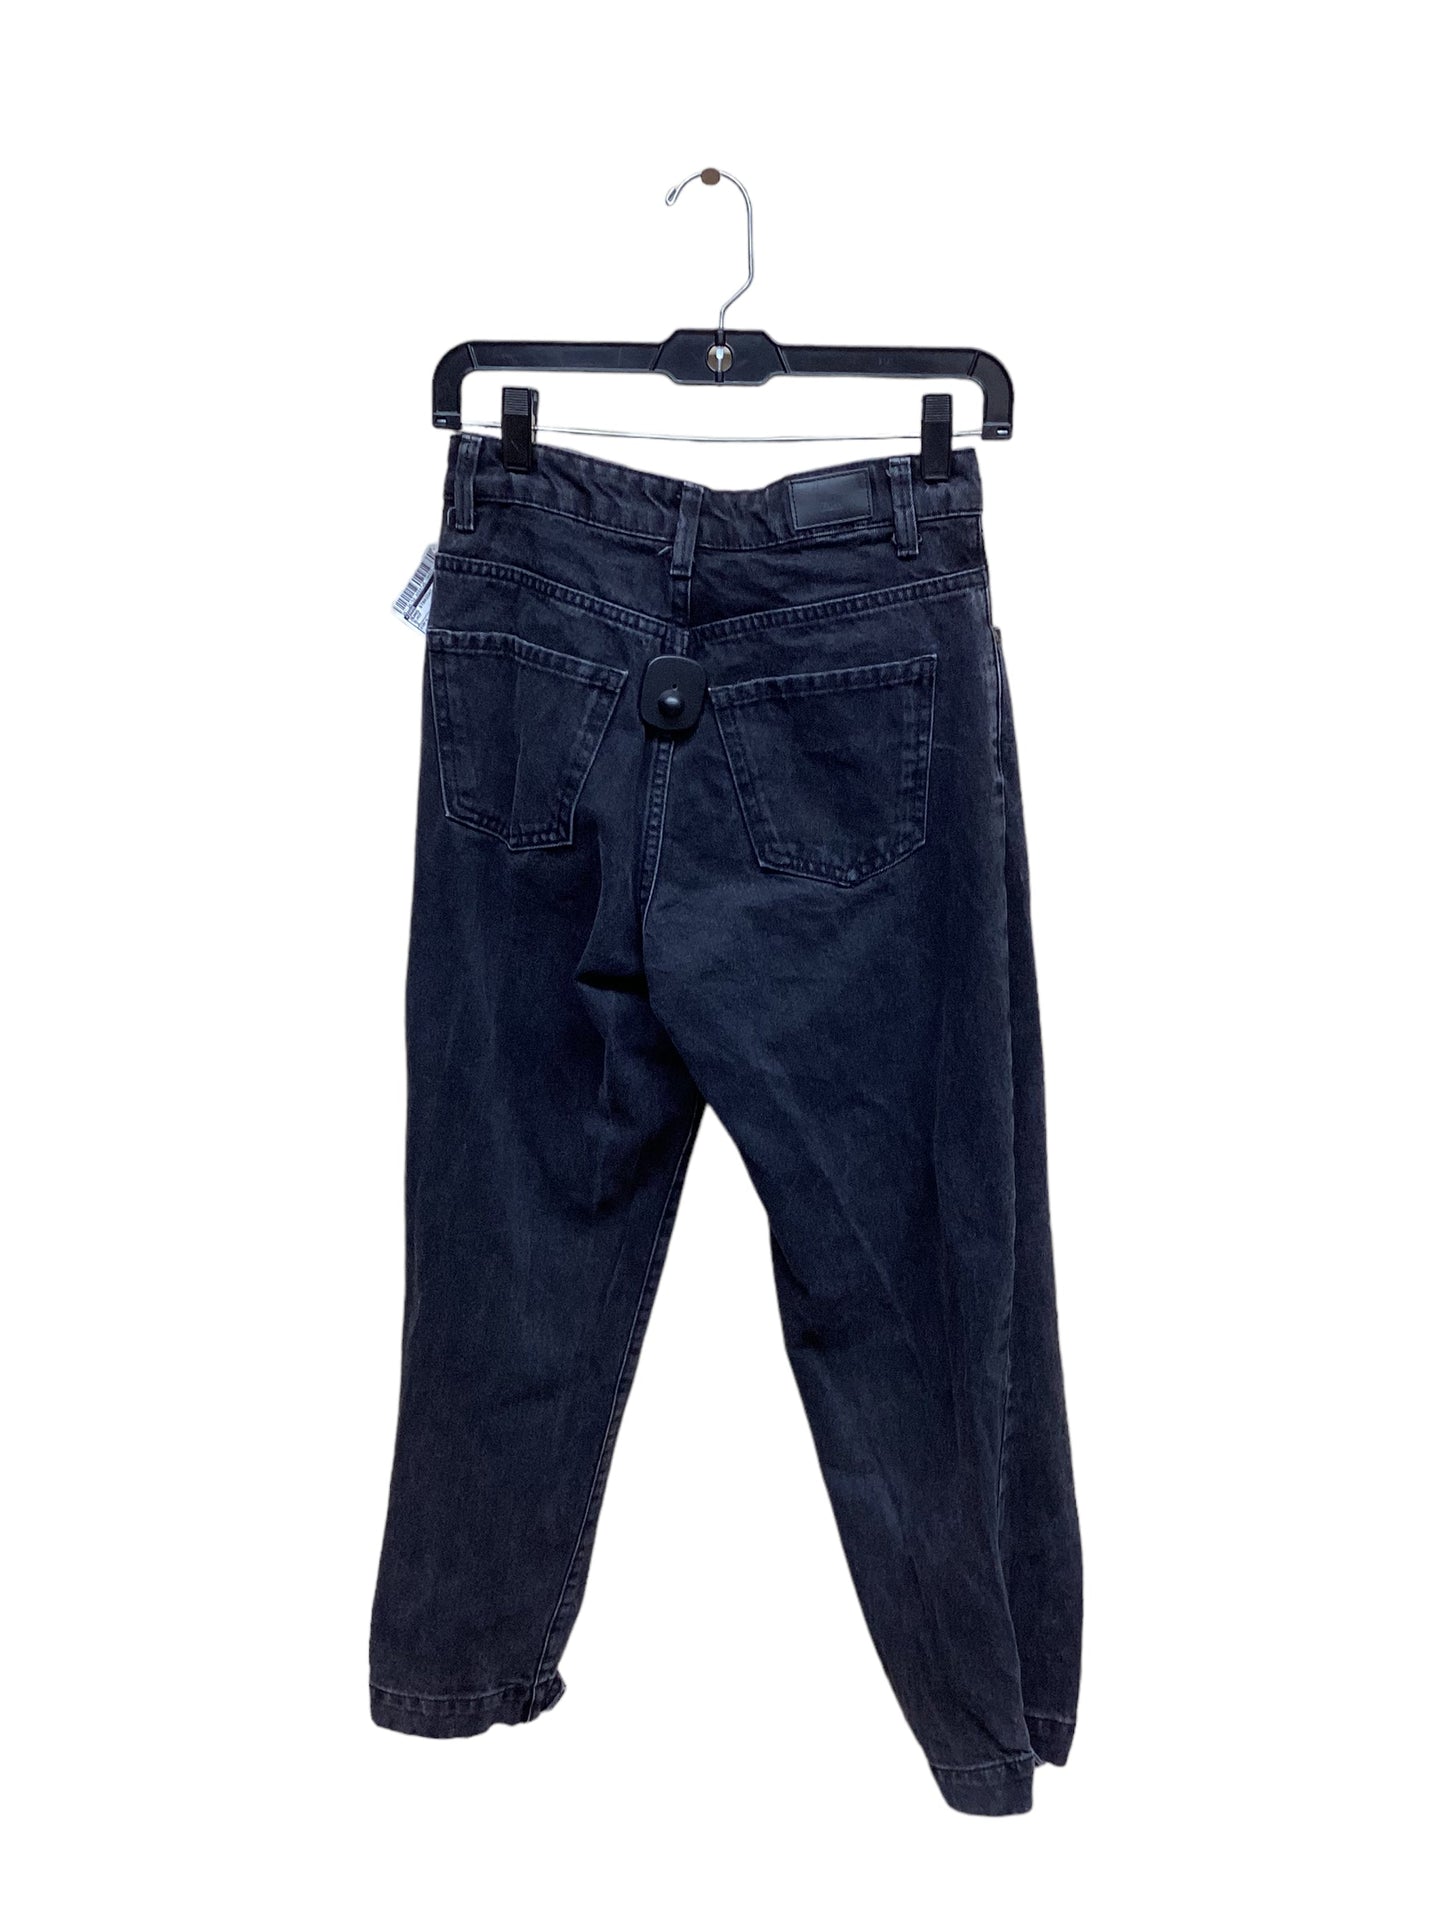 Jeans Straight By Zara  Size: 2